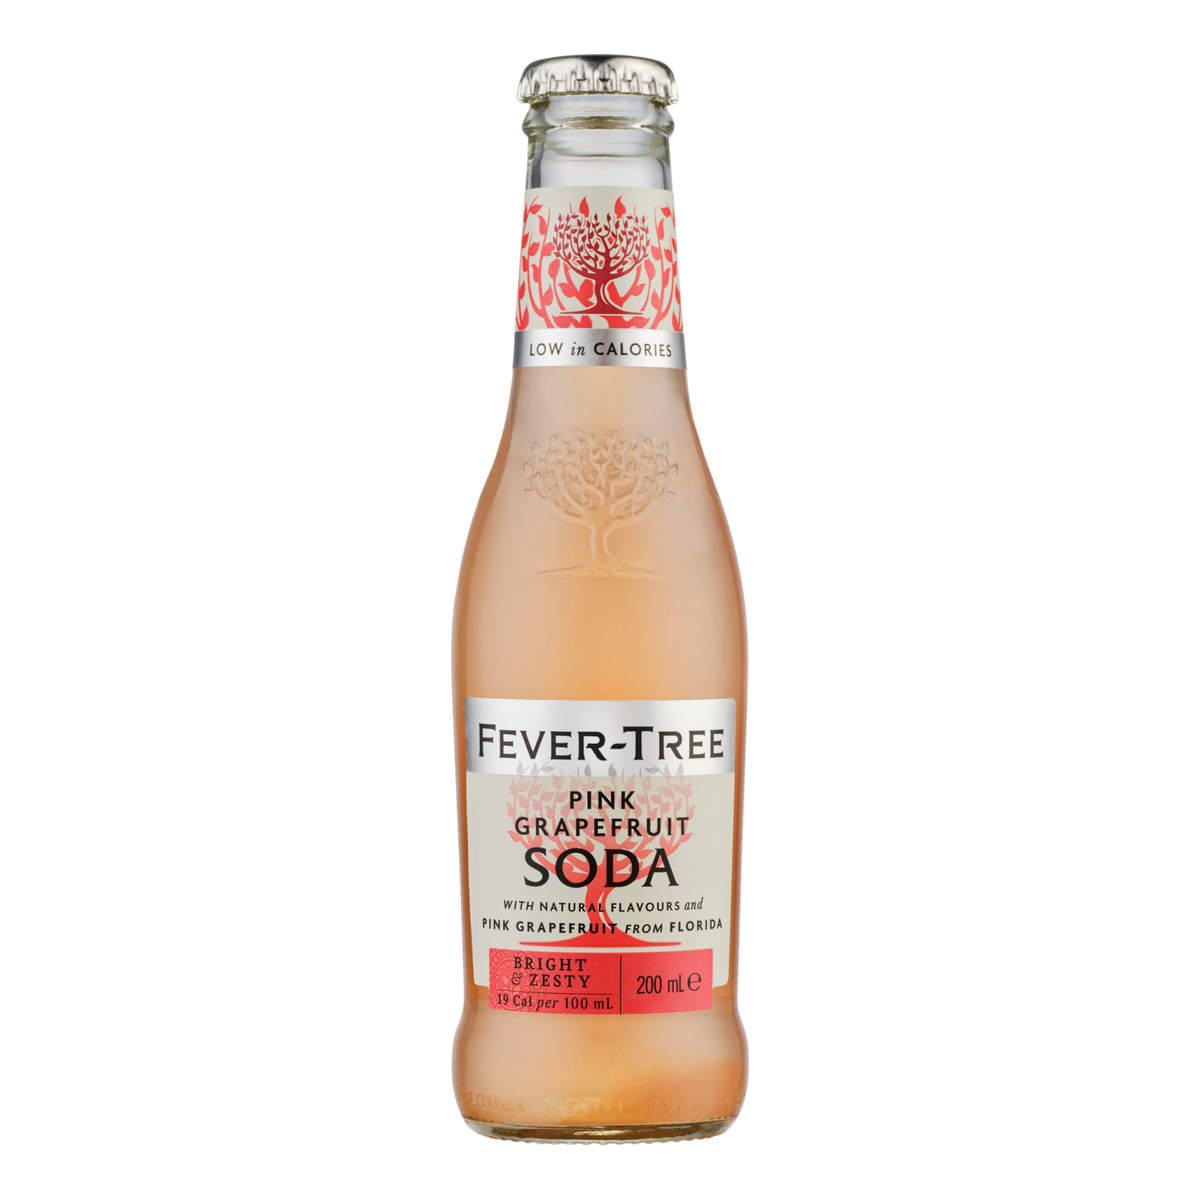 Fever Tree Pink Grapefruit Soda 200ml Bottle Case of 24